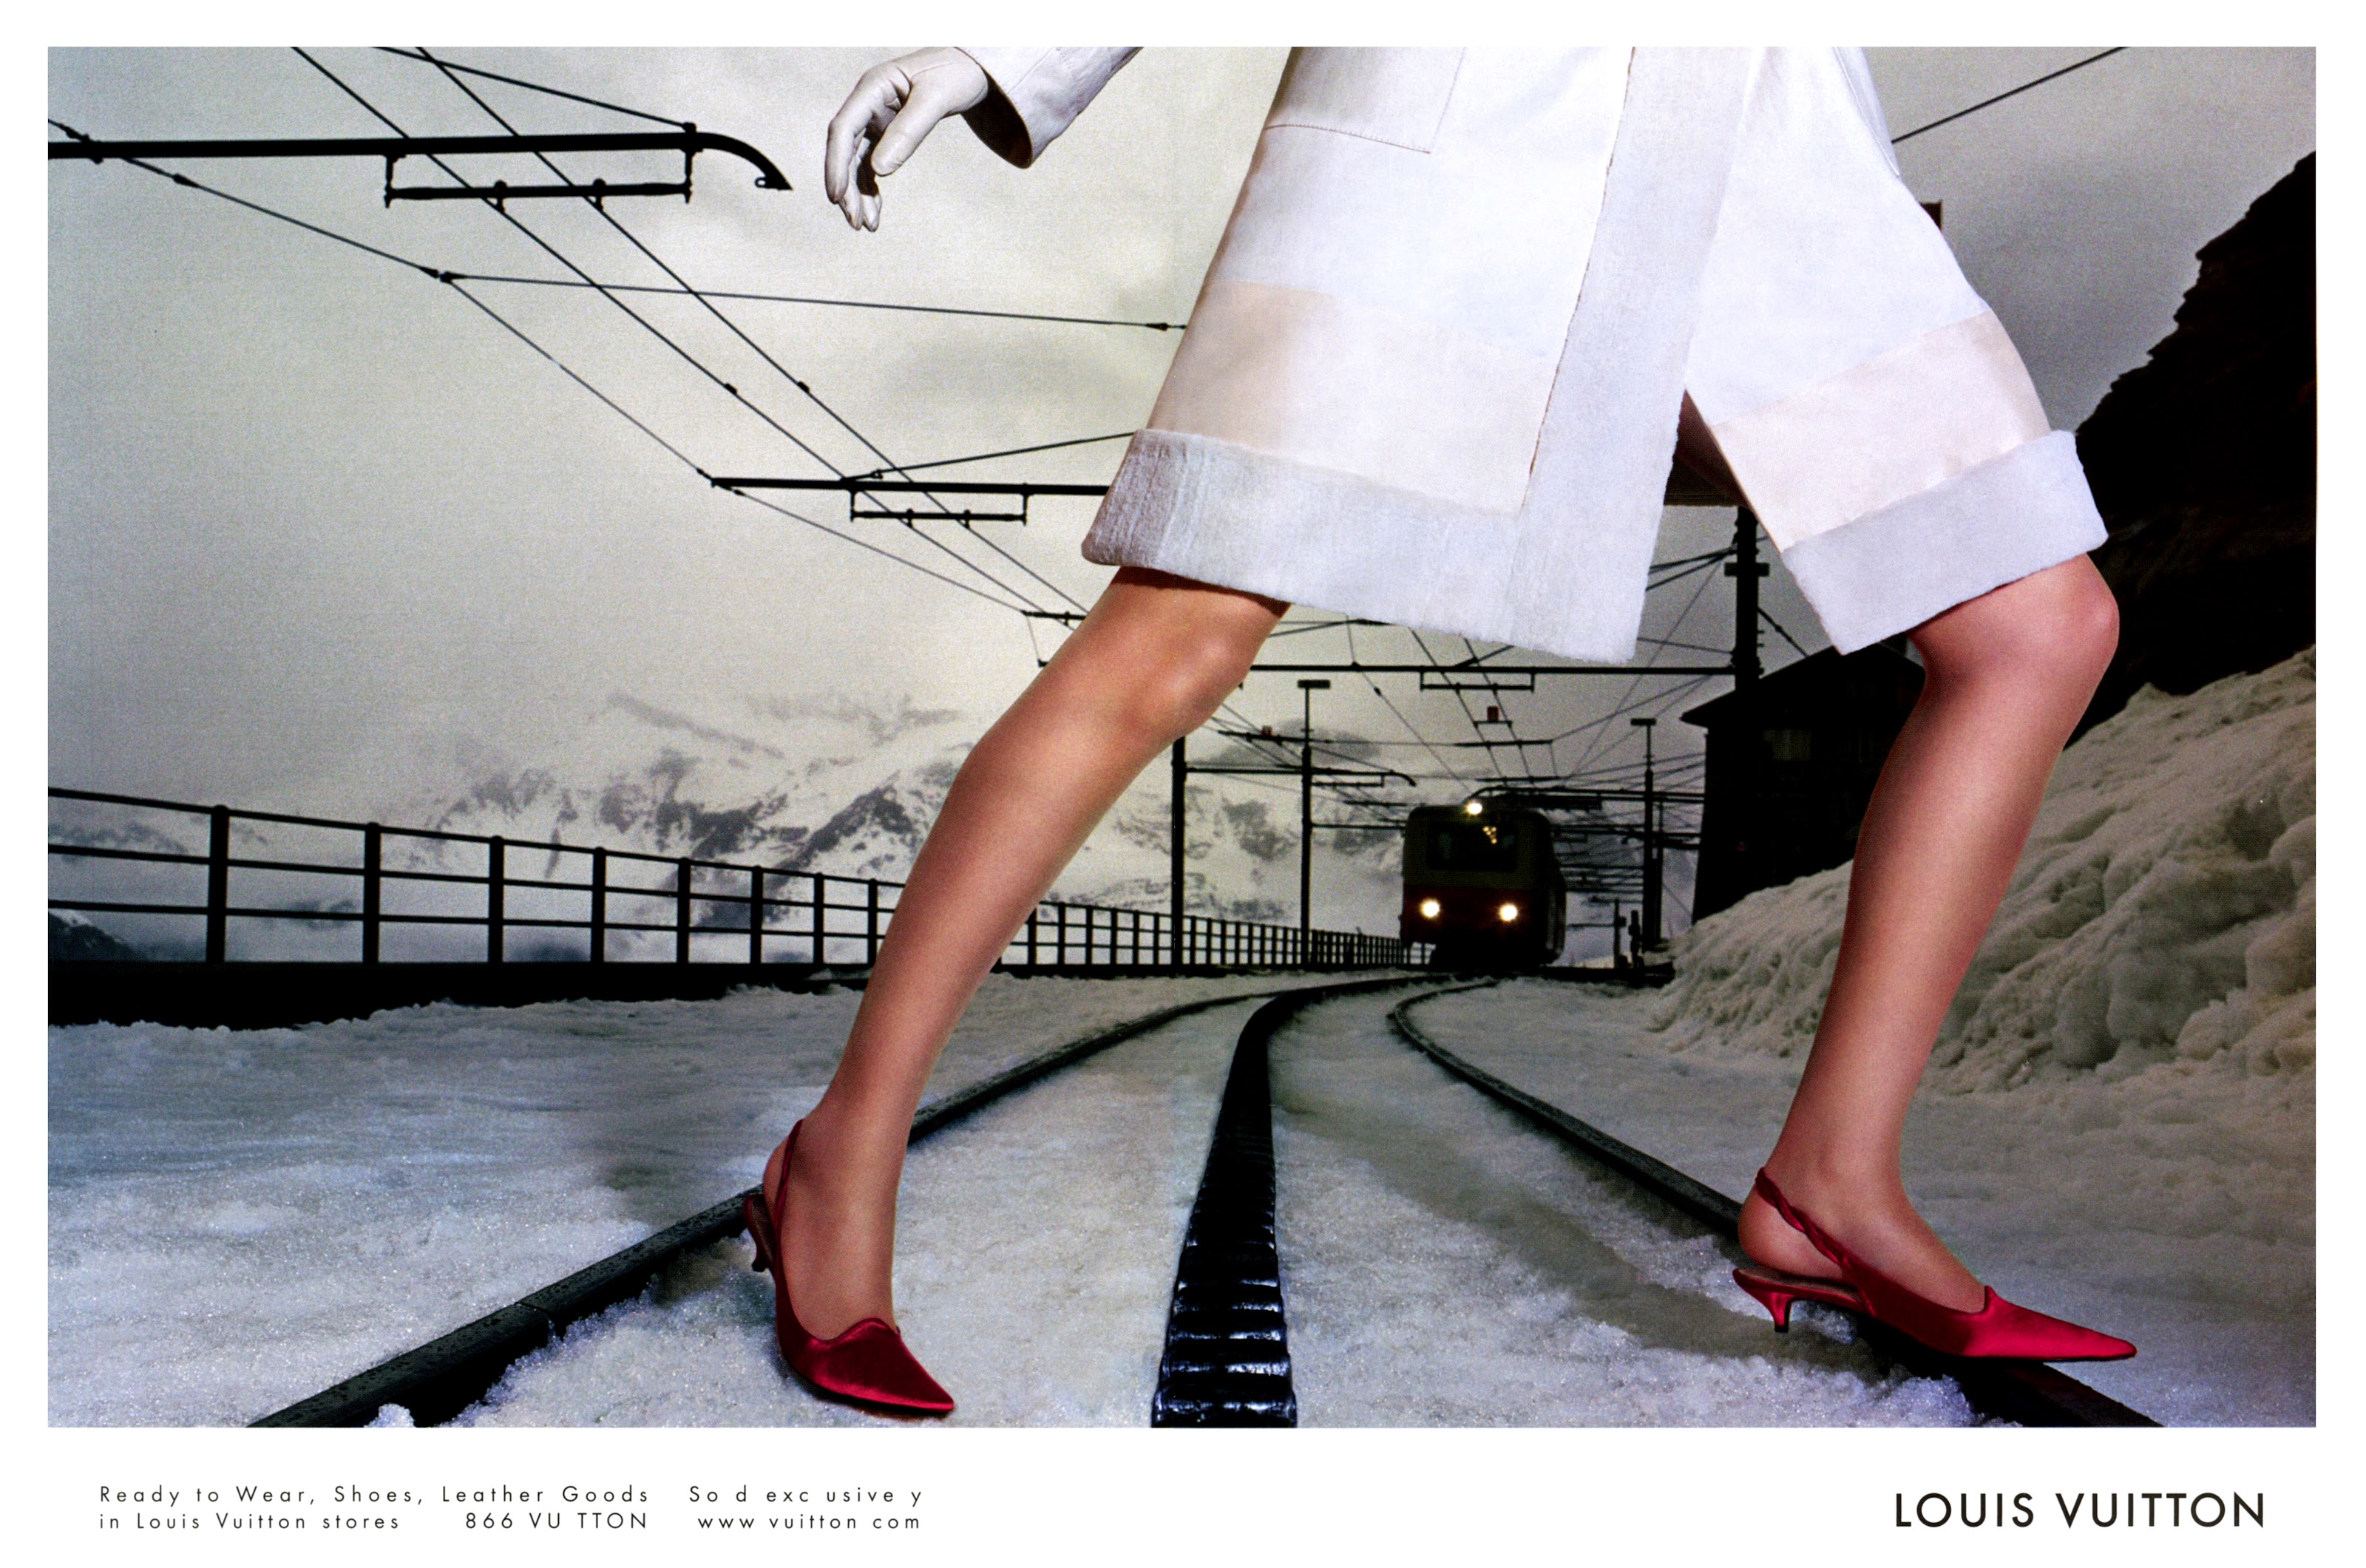 2002 LOUIS VUITTON Luggage : EVA HERZIGOVA Magazine PRINT AD ( 5-pg )